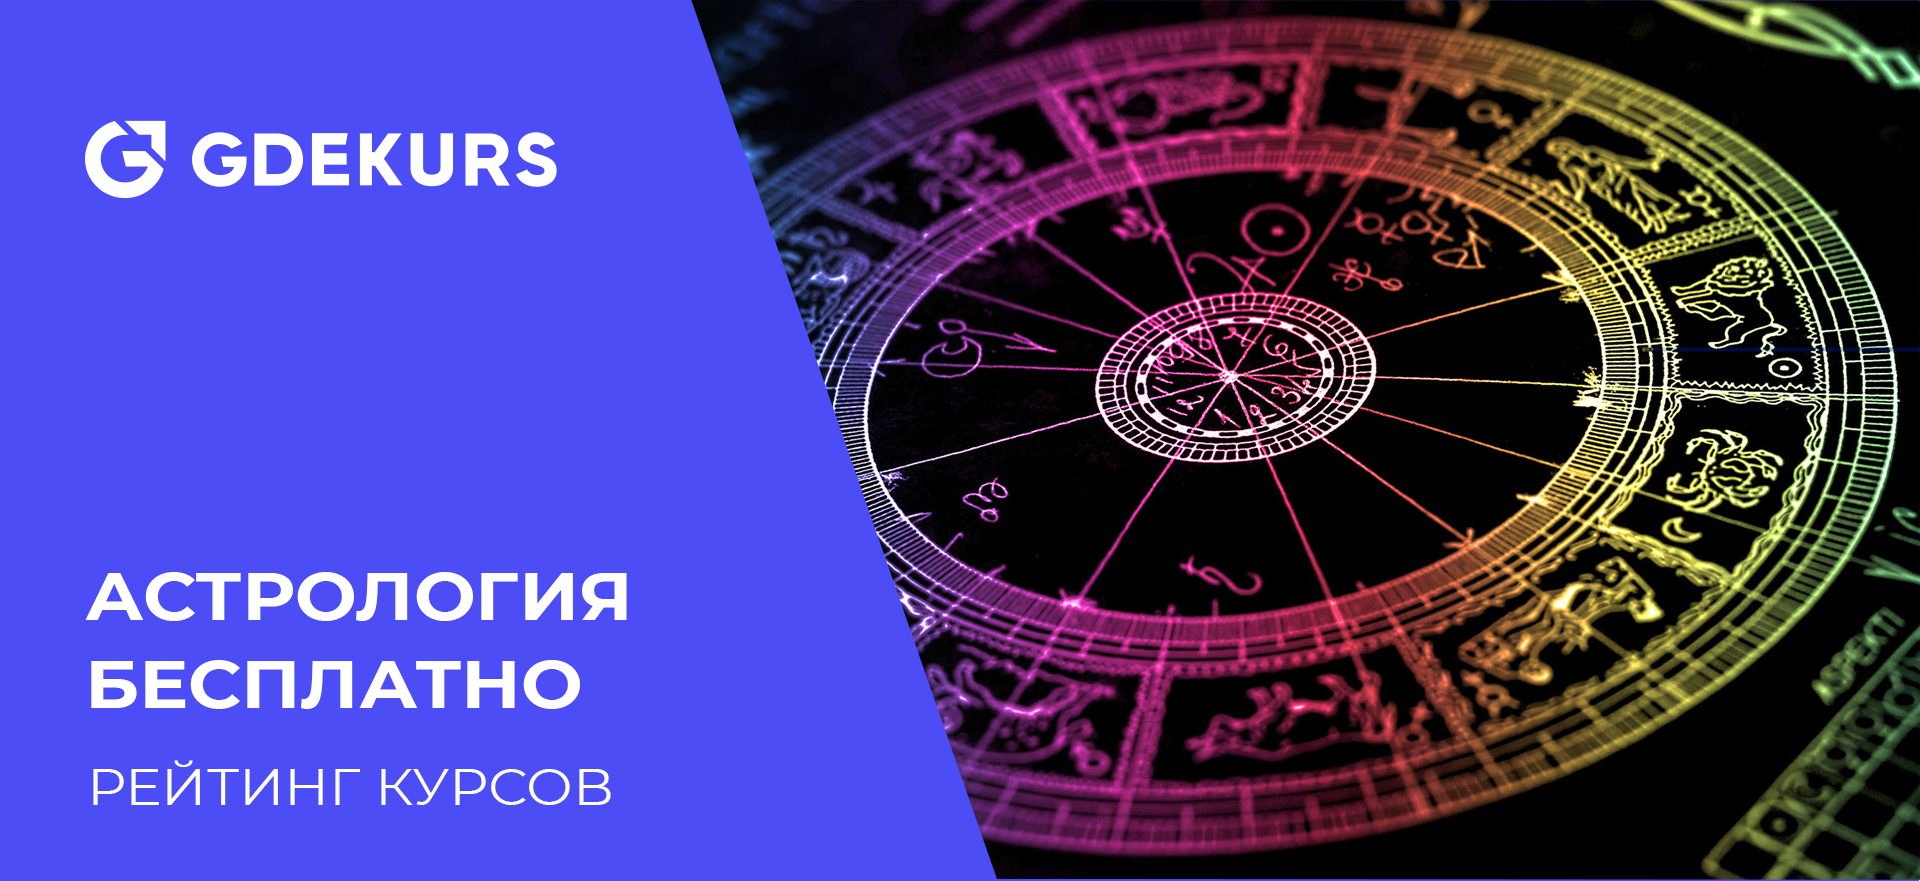 ТОП-15 бесплатных курсов по астрологии для начинающих от лучших онлайн-школ